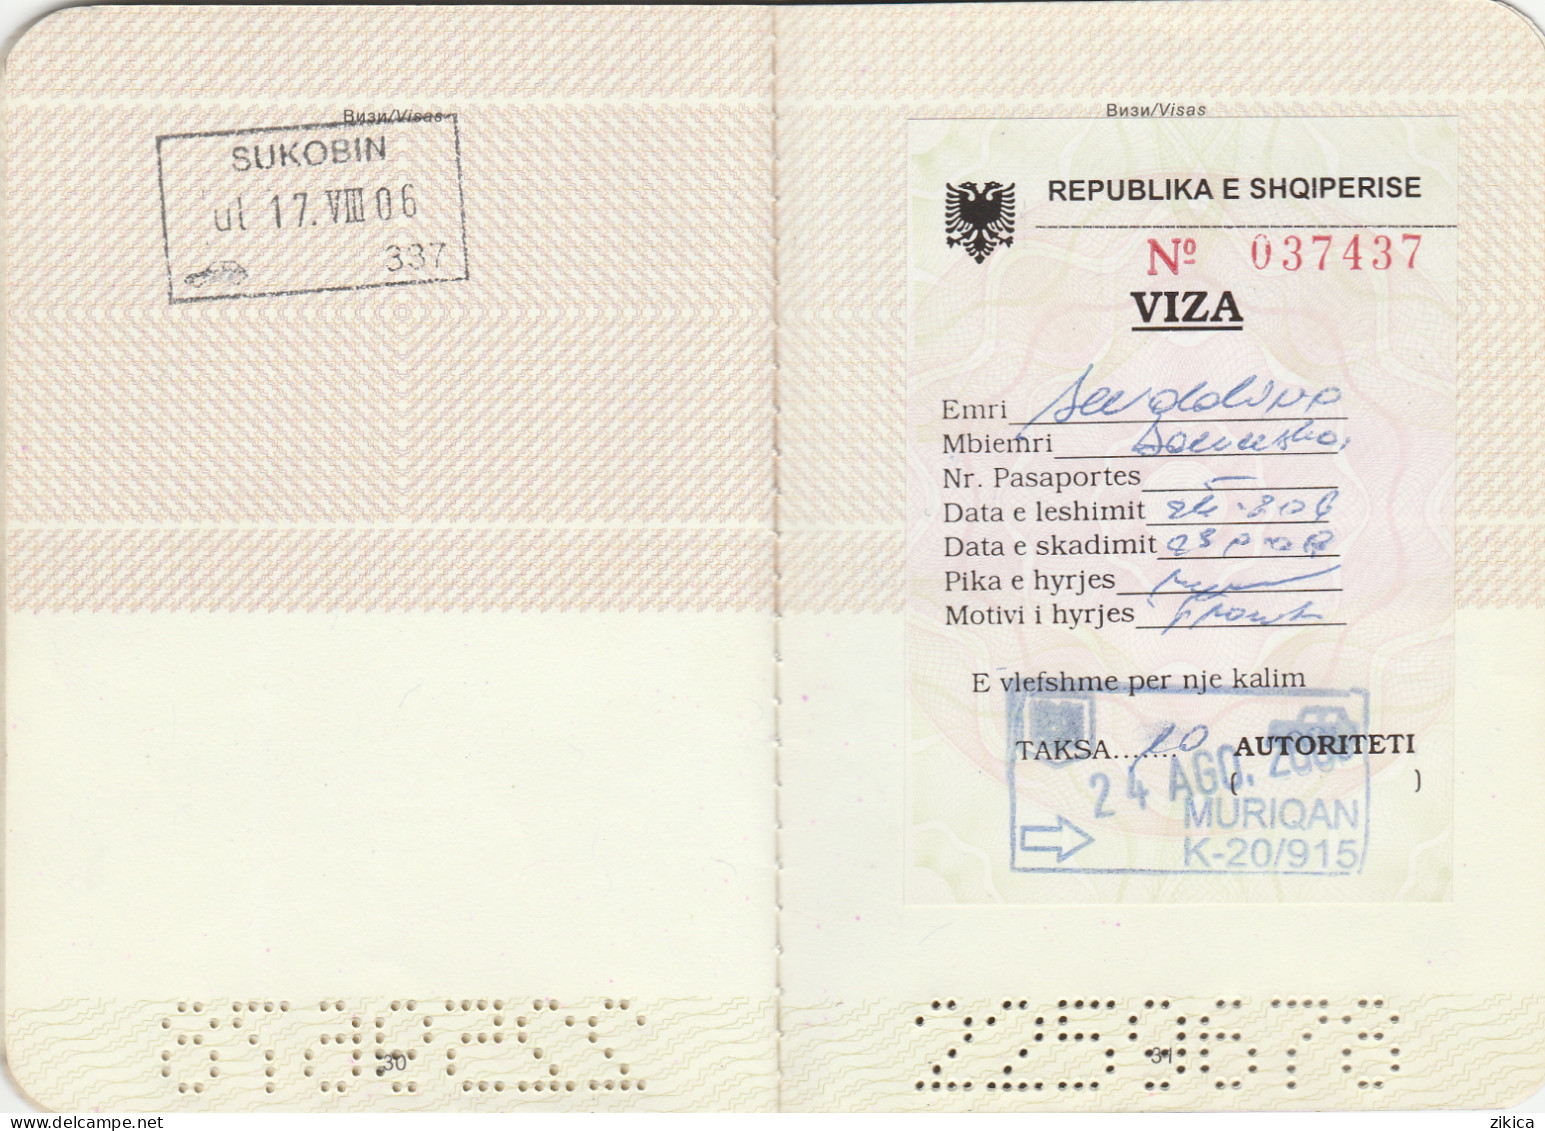 Passeport,passport, pasaporte, reisepass,Republic of Macedonia,visas